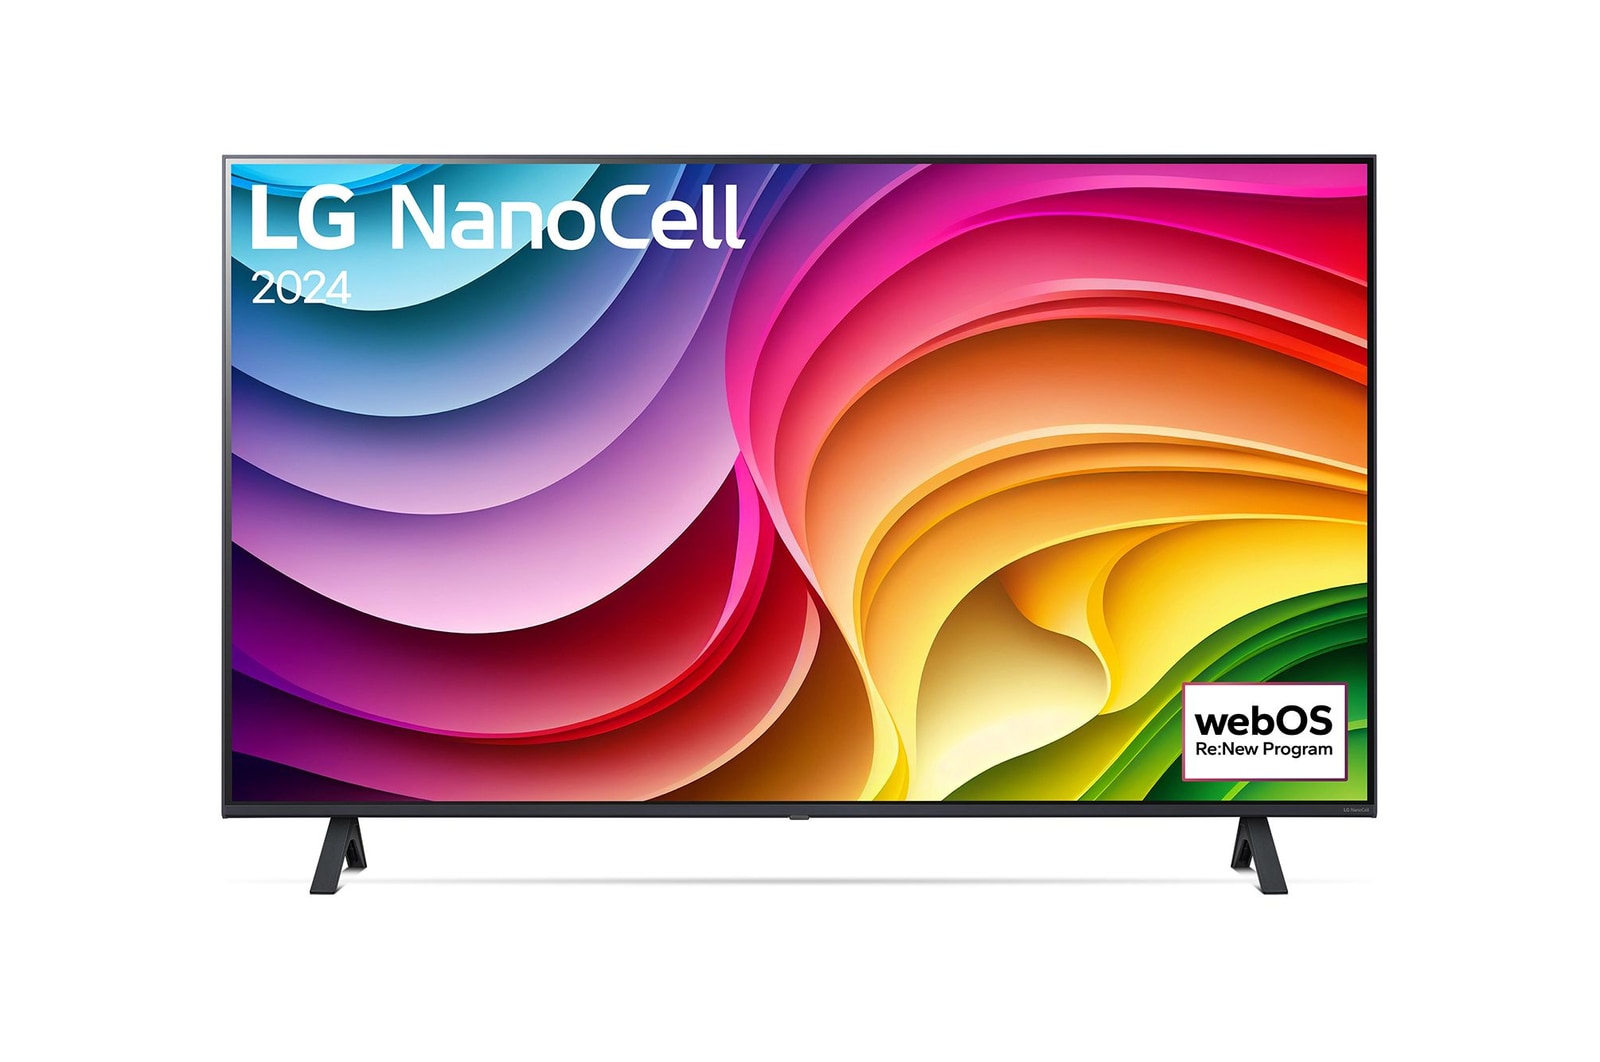 Vorderansicht des LG NanoCell-Fernsehers, NANO80 mit Text „LG NanoCell“ und „2024“ auf dem Bildschirm